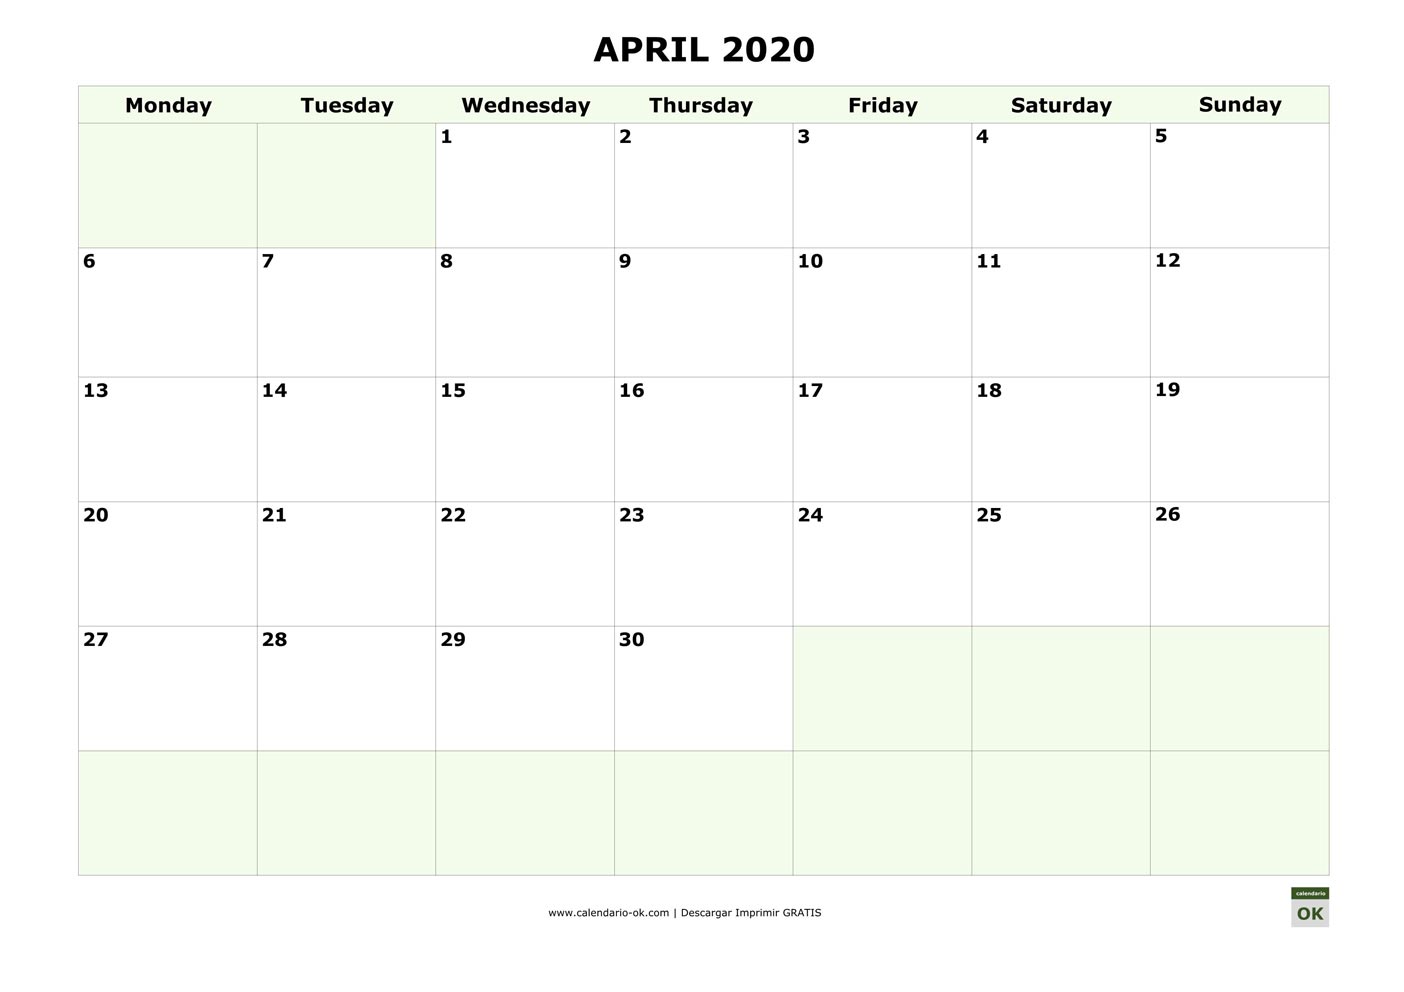 ABRIL 2020 calendario en INGLES